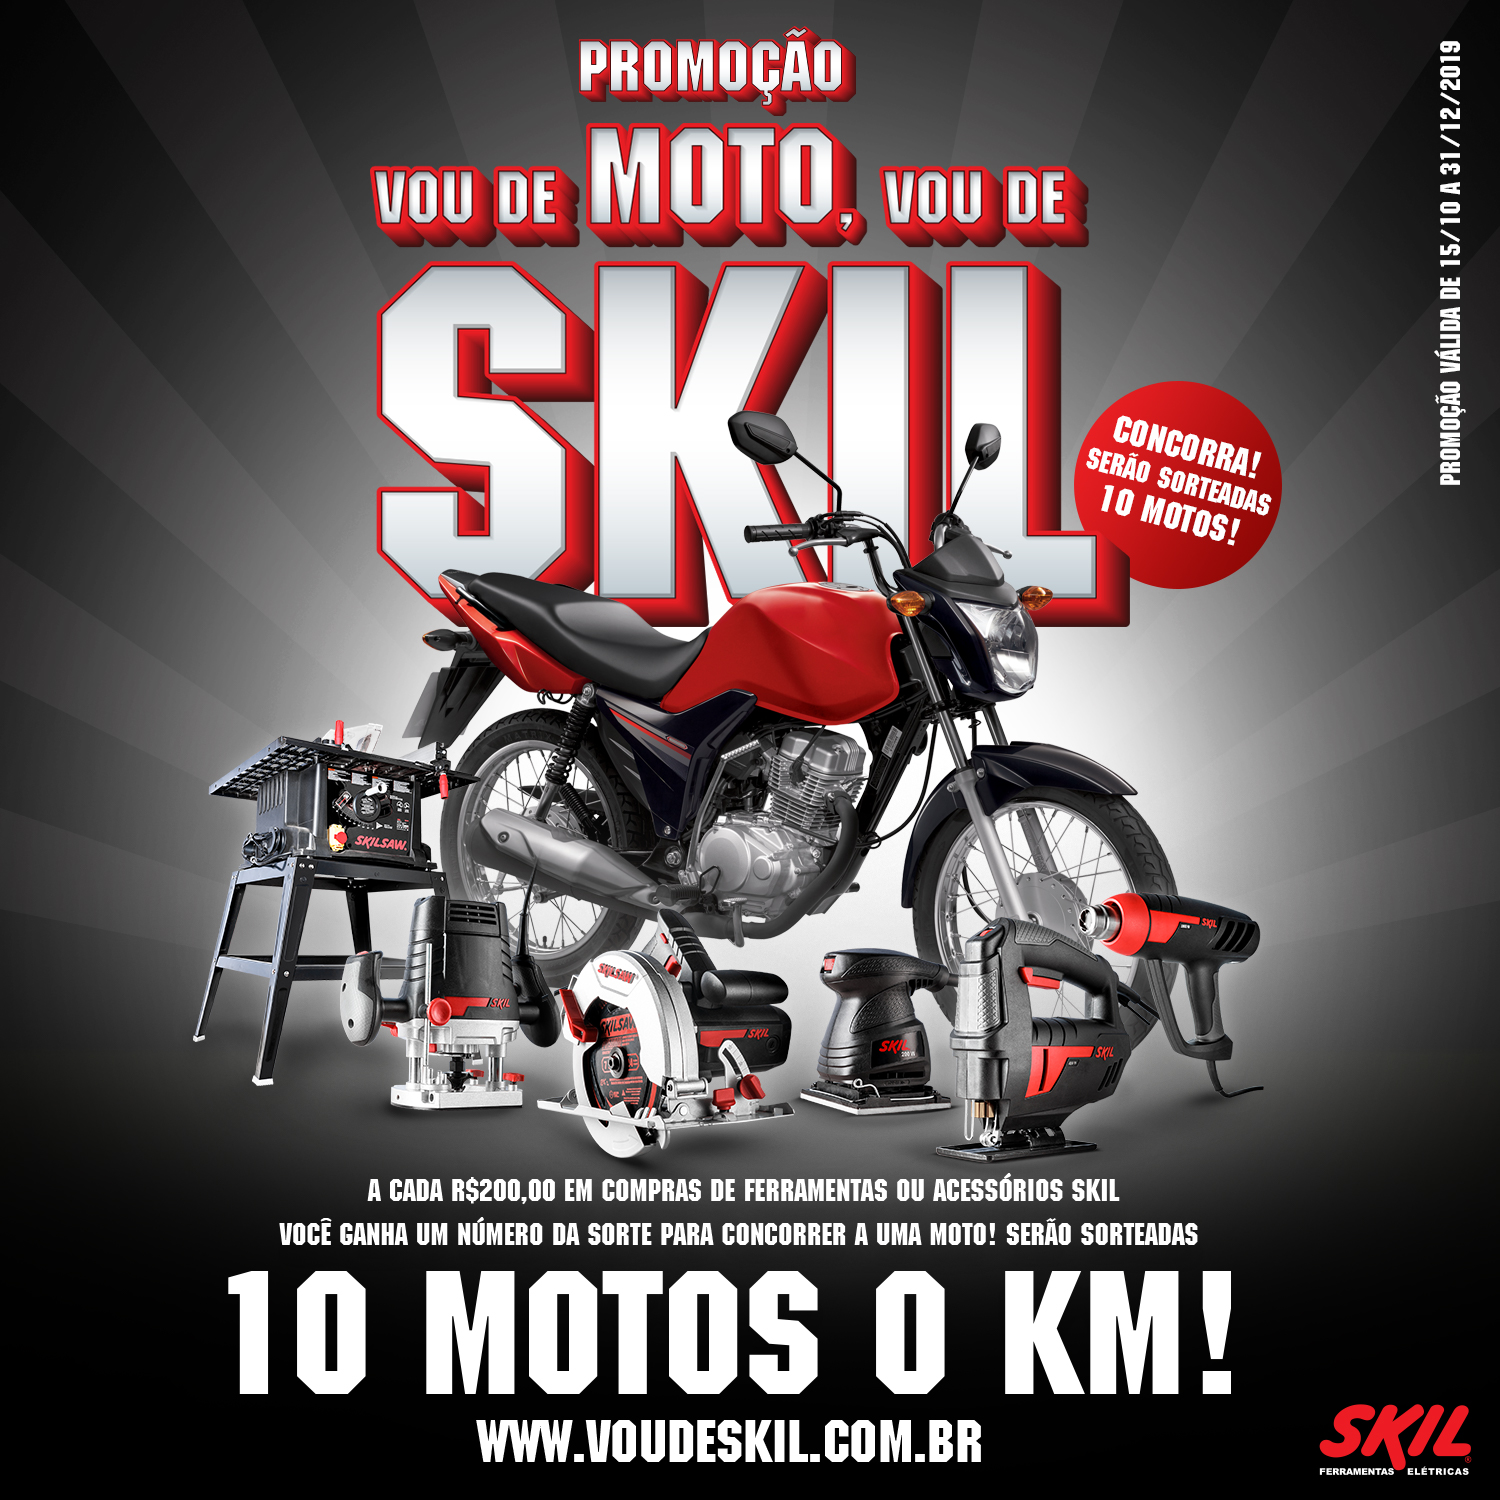 Promoção “Vou de Moto, Vou de Skil”